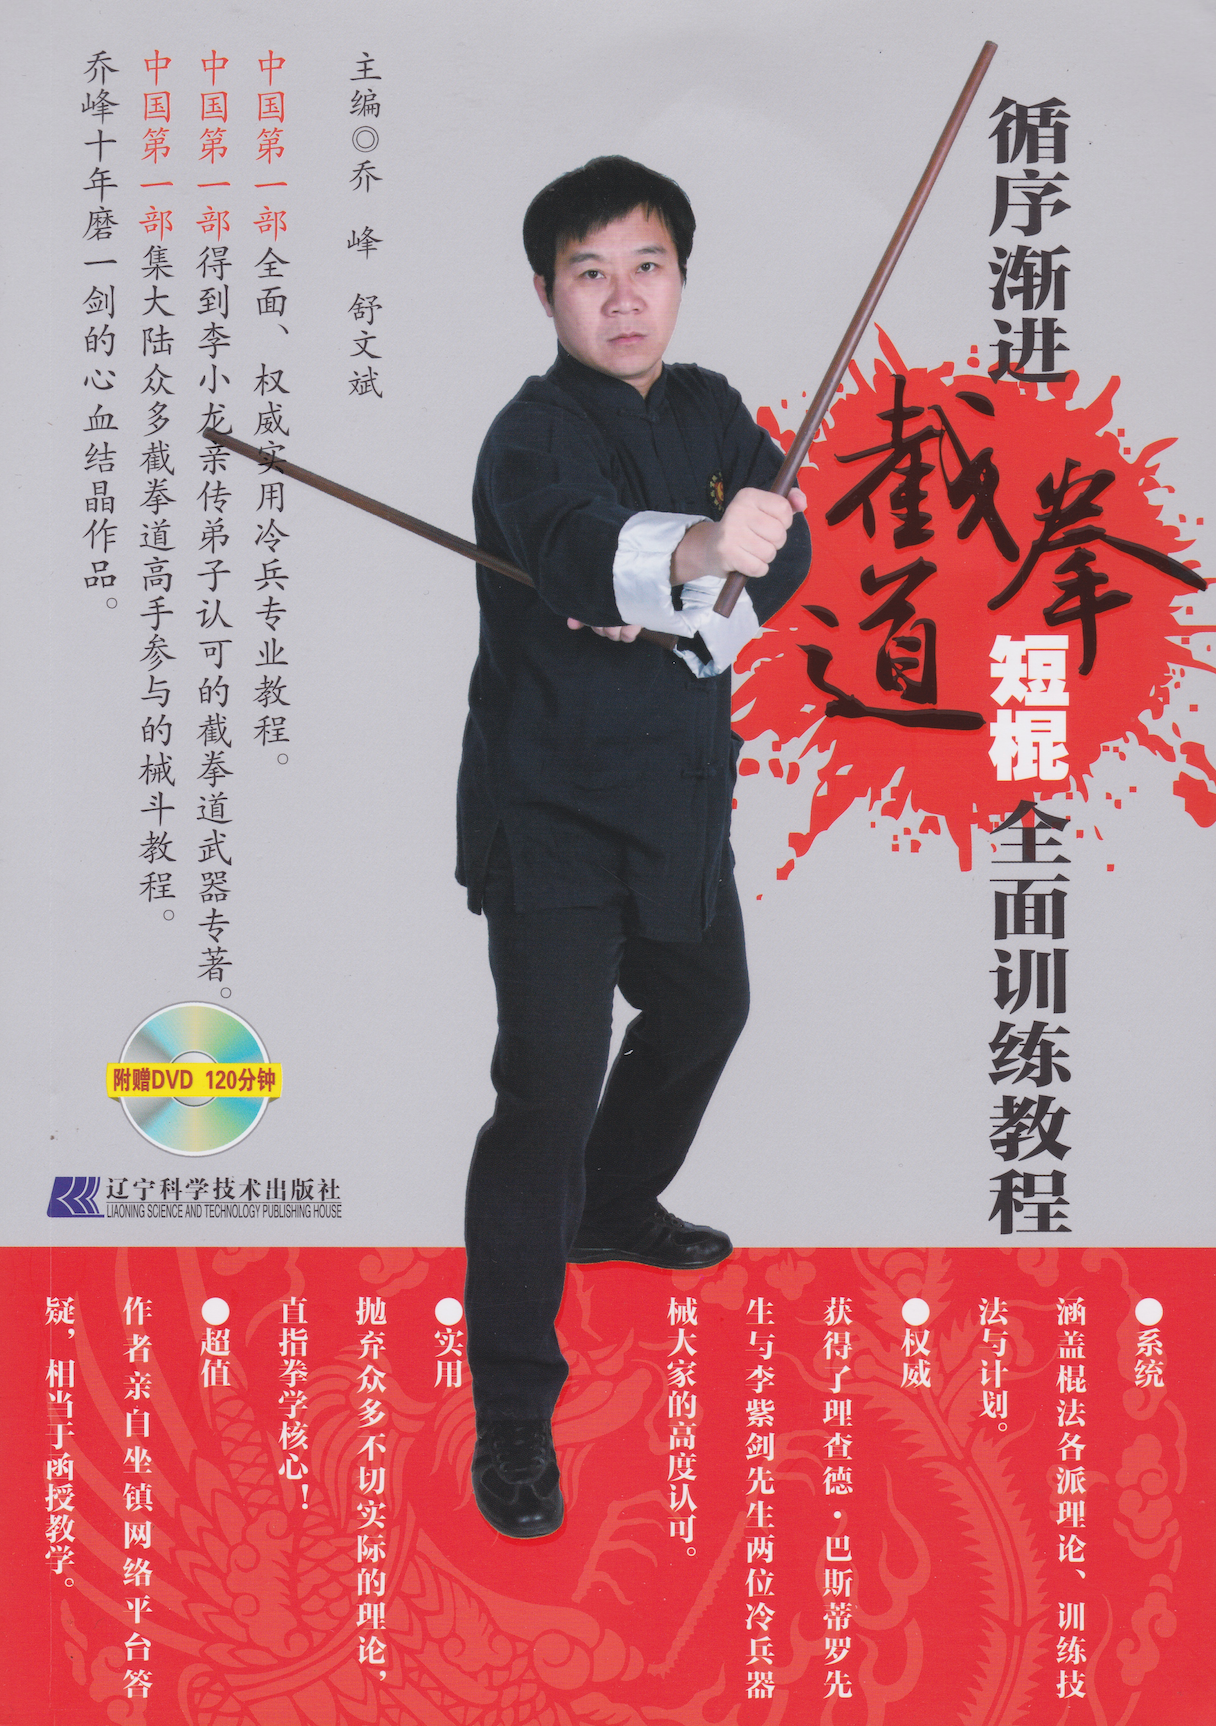 Short Stick Training Book & DVD by Qiao Feng Shu Wenbin